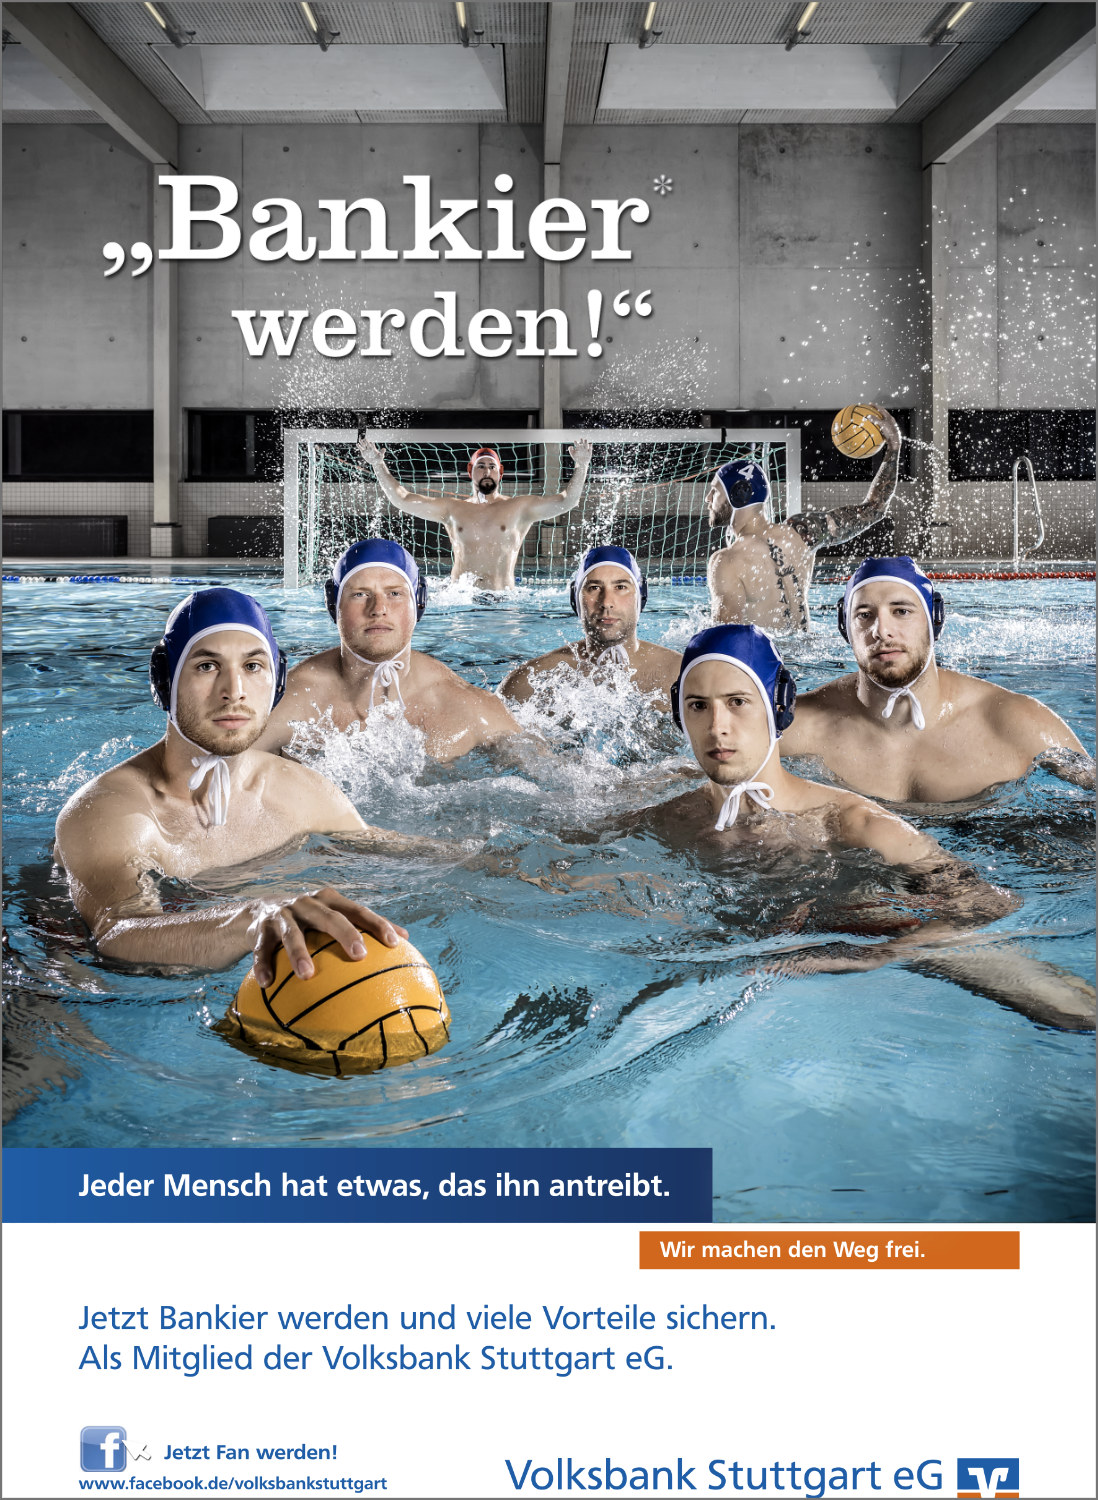 Imagefotografie Werbefotografie Kampagnenfotografie Volksbank Stuttgart eG Bankier Kampagne Bankier werden Wasserball Wasserballer MTV Stuttgart moderne Schwimmhalle Schwimmbad Wasser Dynamik